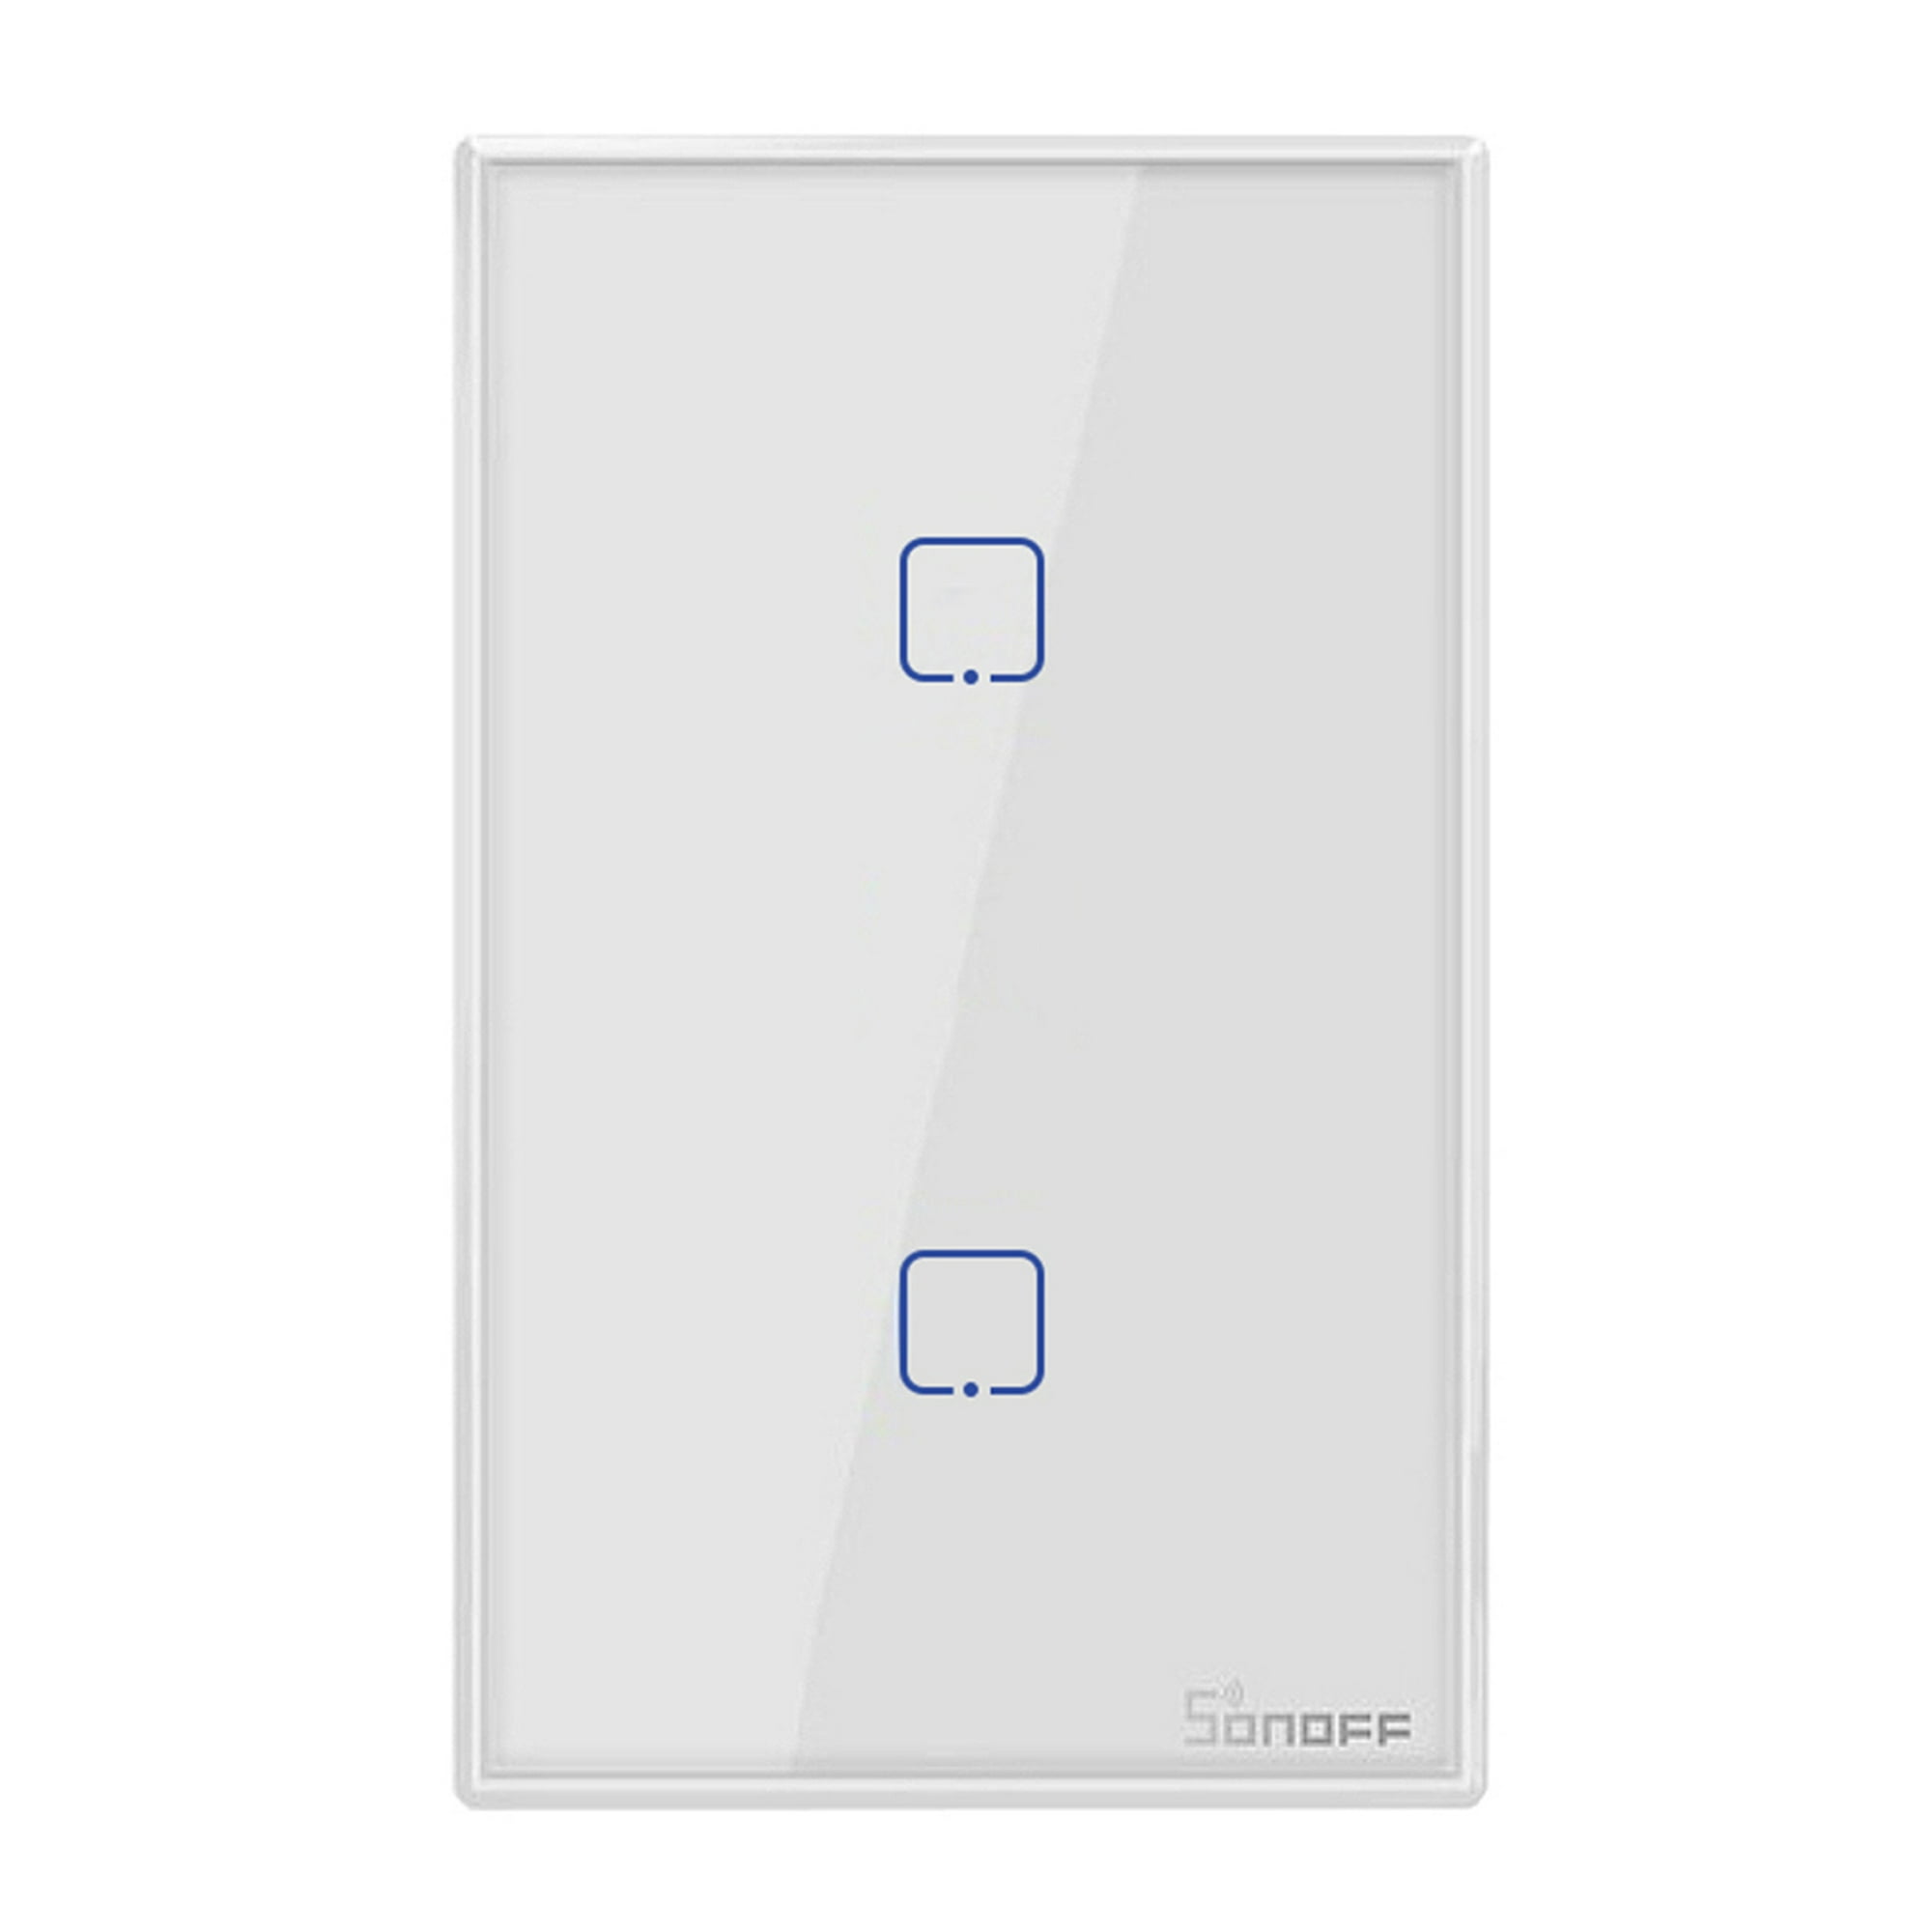 WiFi Smart Light Switch 2 Botones Smartify - Blanco